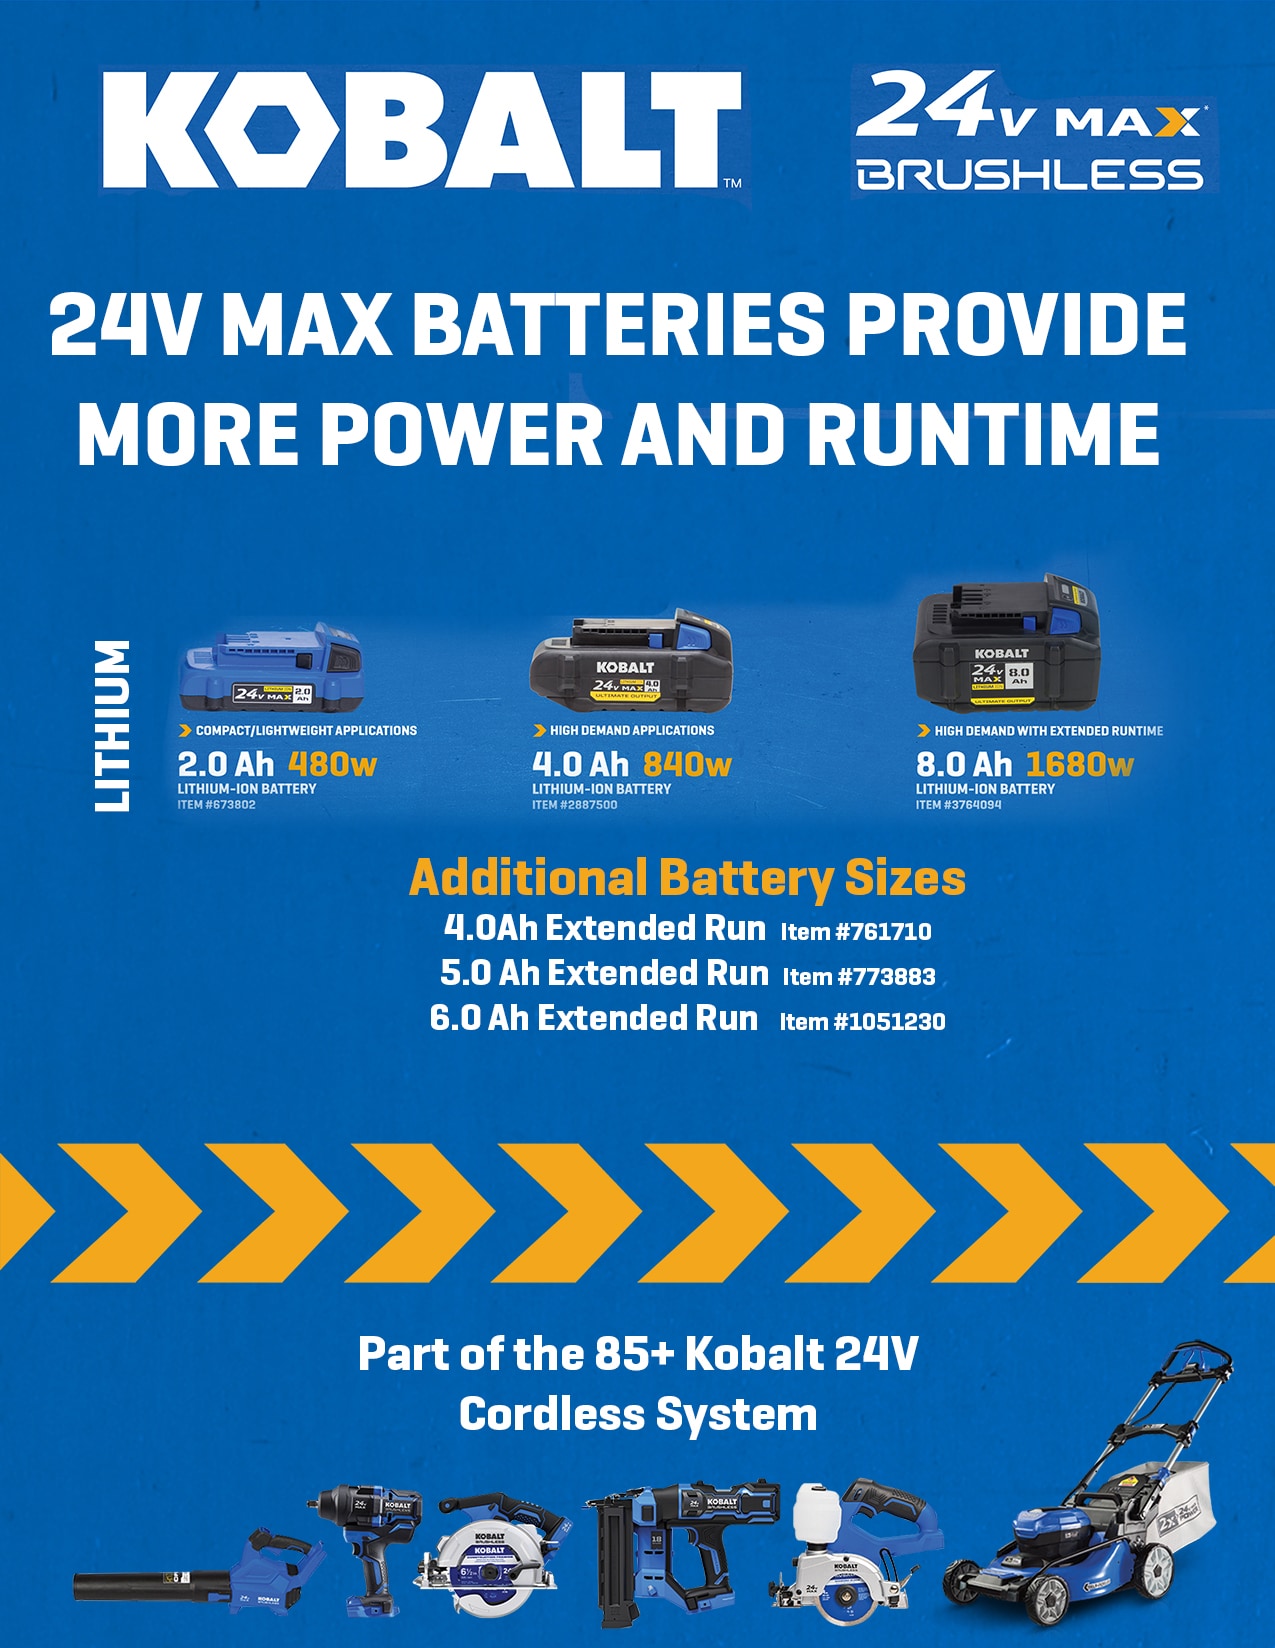 Bateria worx Max 20v 4.0Ah y 5.0Ah